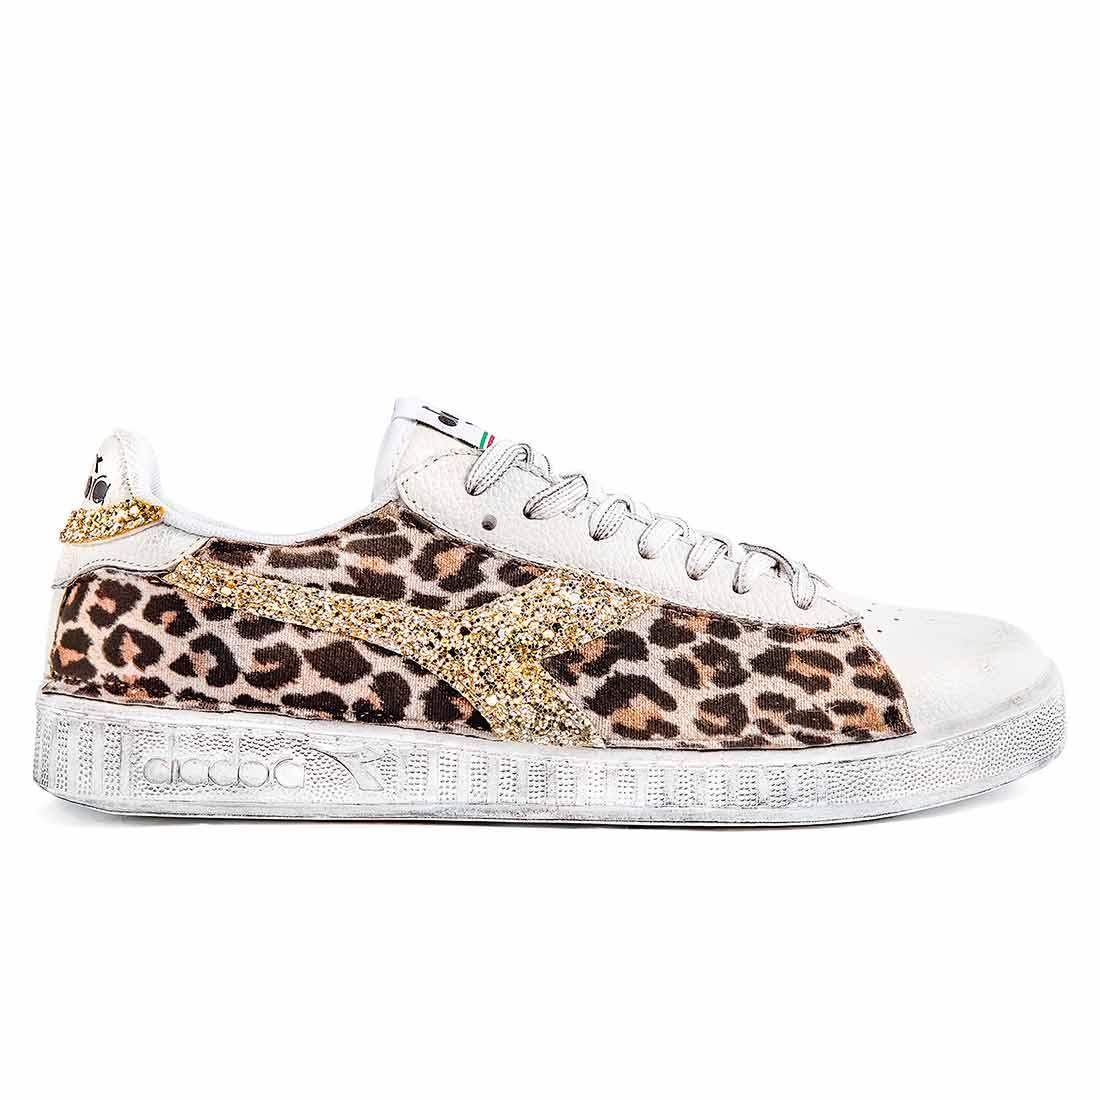 scarpe diadora game low leopardate con dettagli in glitter oro 